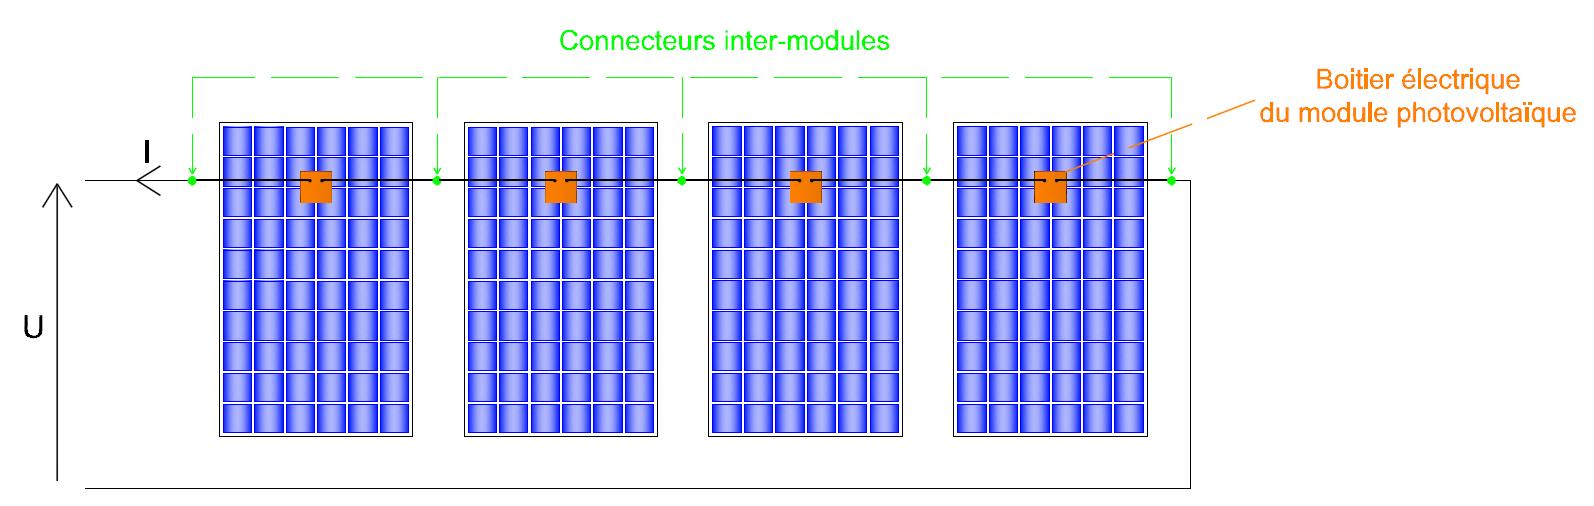 Chute de tension singulière au niveau des connexions inter-modules